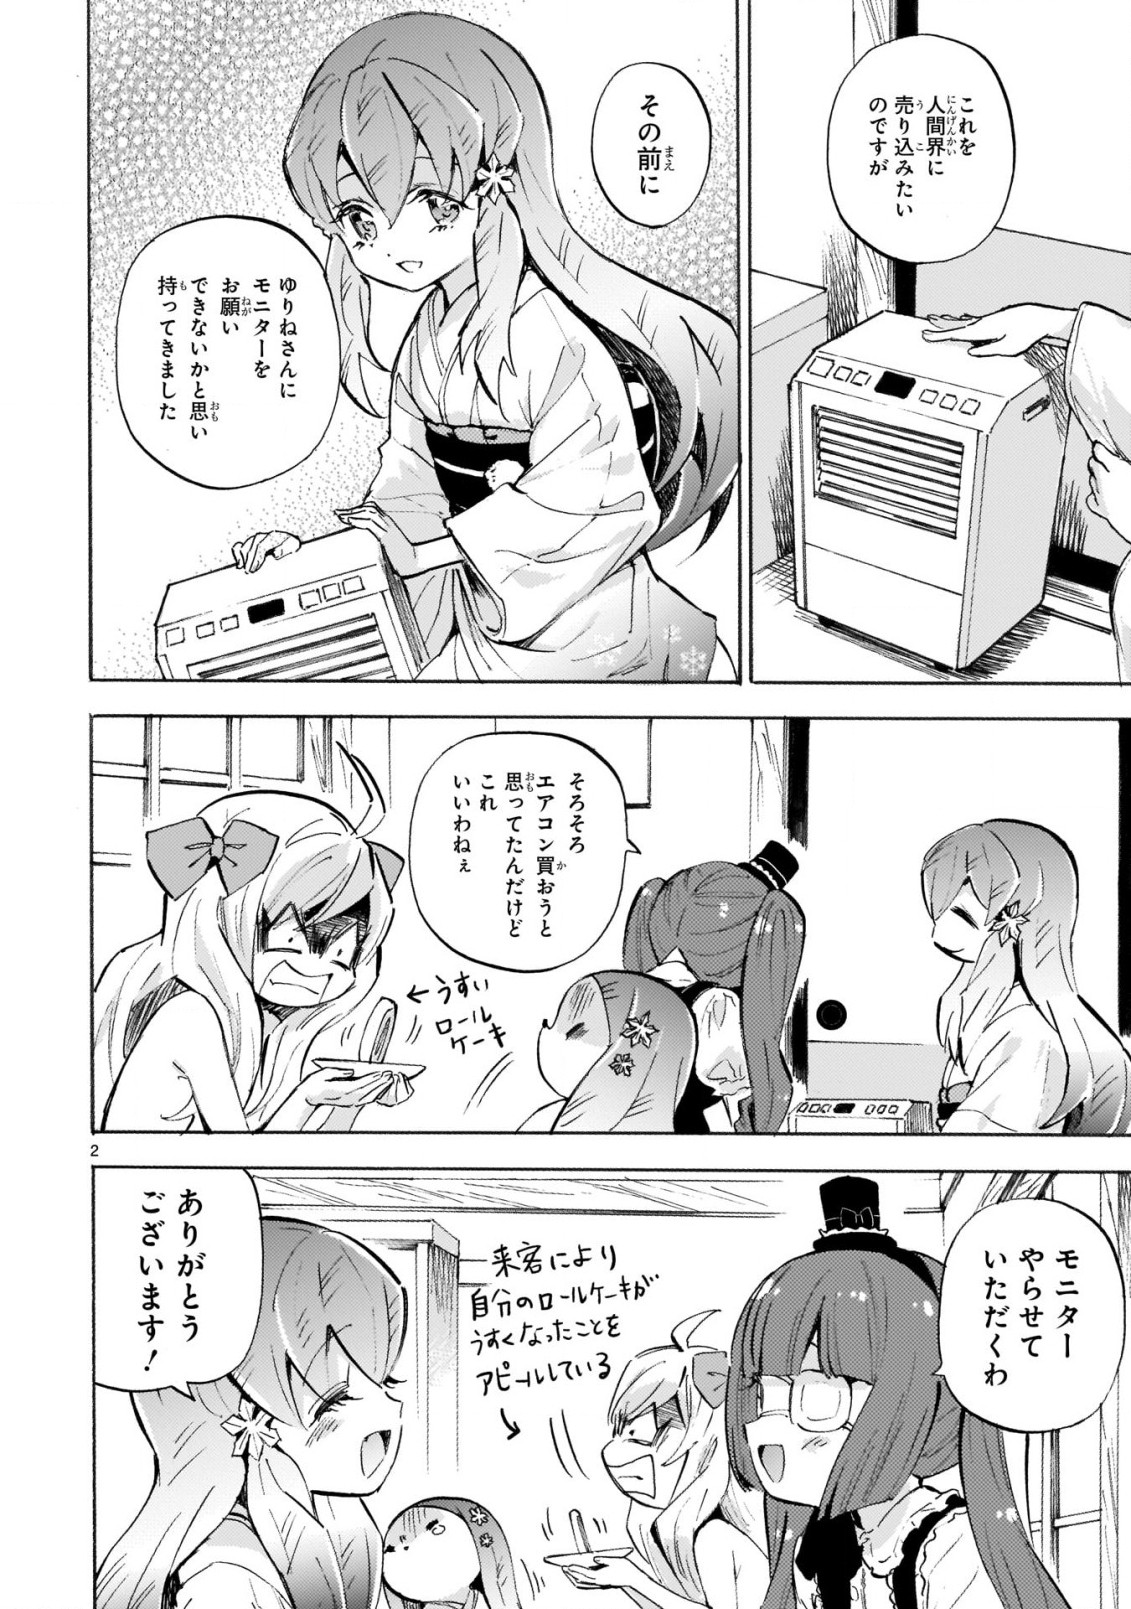 Jashin-chan Dropkick - Chapter 220 - Page 2